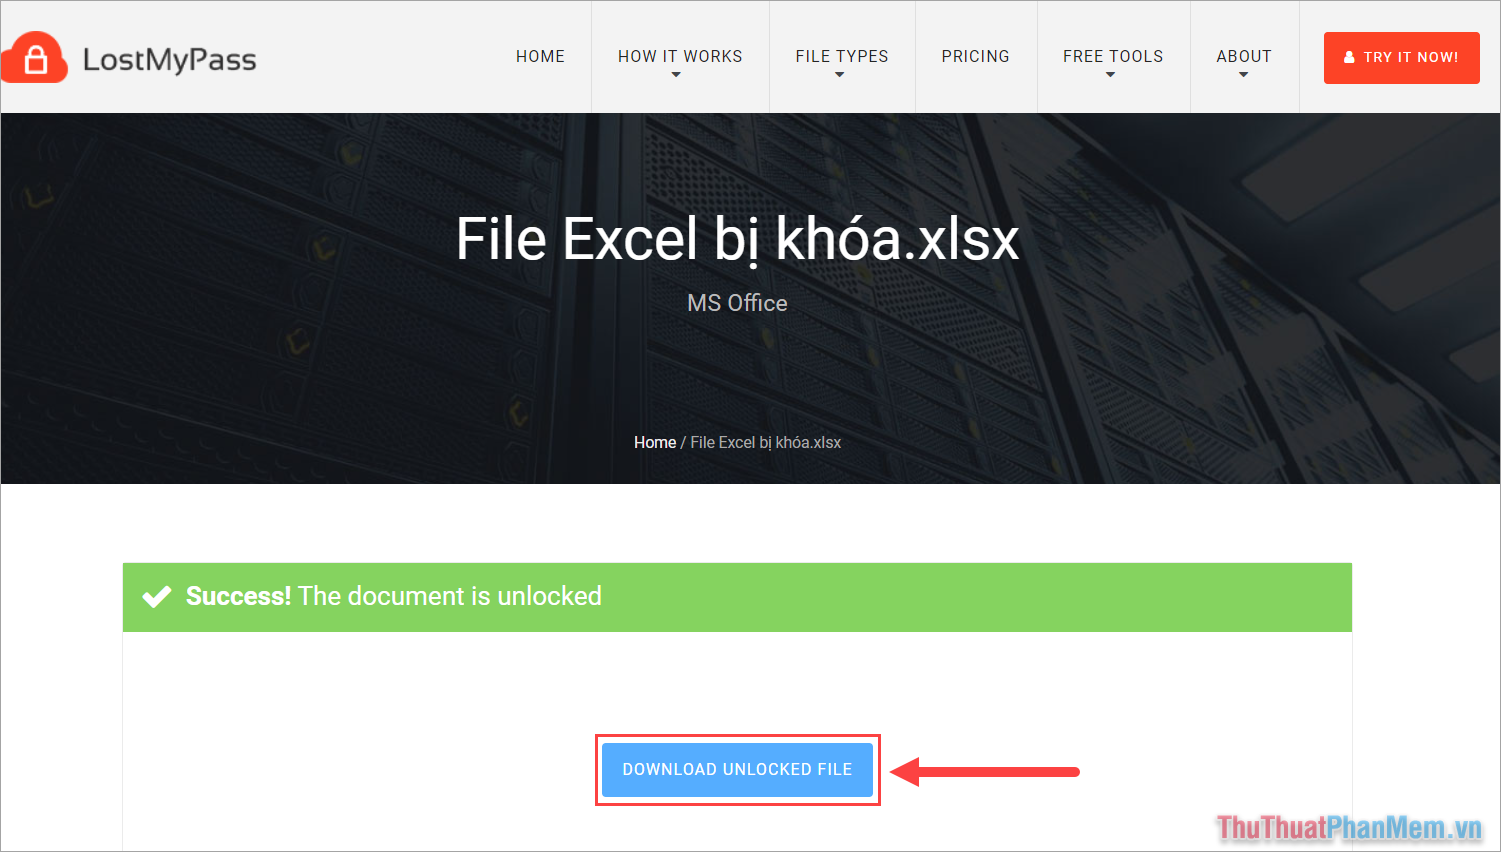 Chọn Download Unlocked File để tải file Excel đã mở khóa